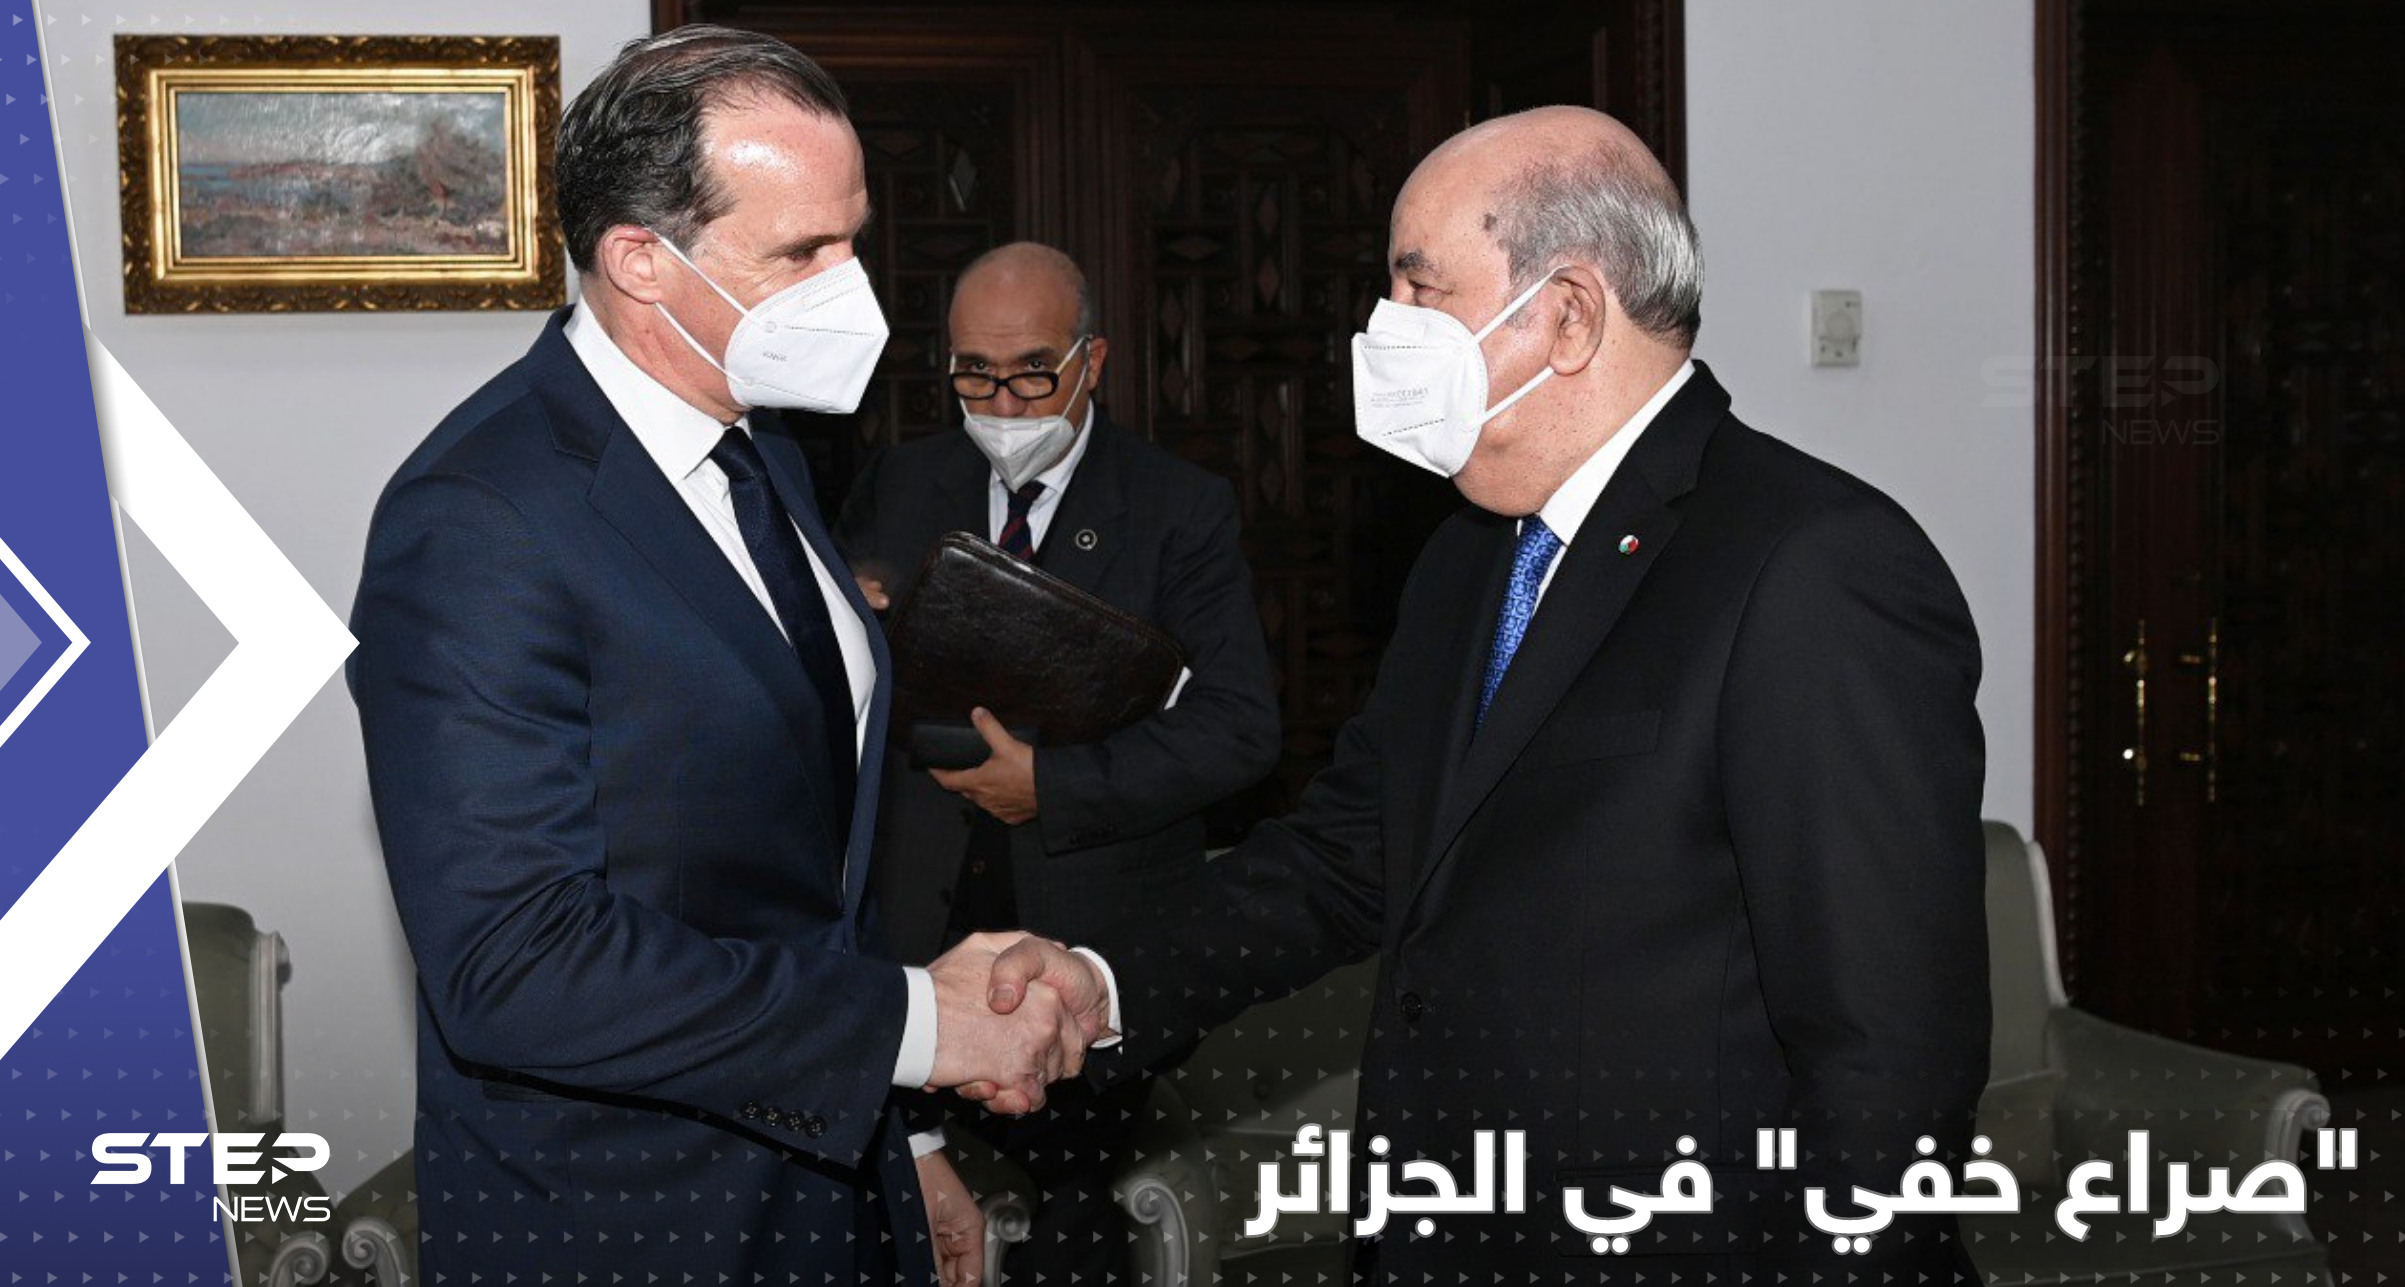 توقيت زيارة مسؤول أمريكي رفيع إلى الجزائر يكشف عن "صراع خفي" بالمنطقة